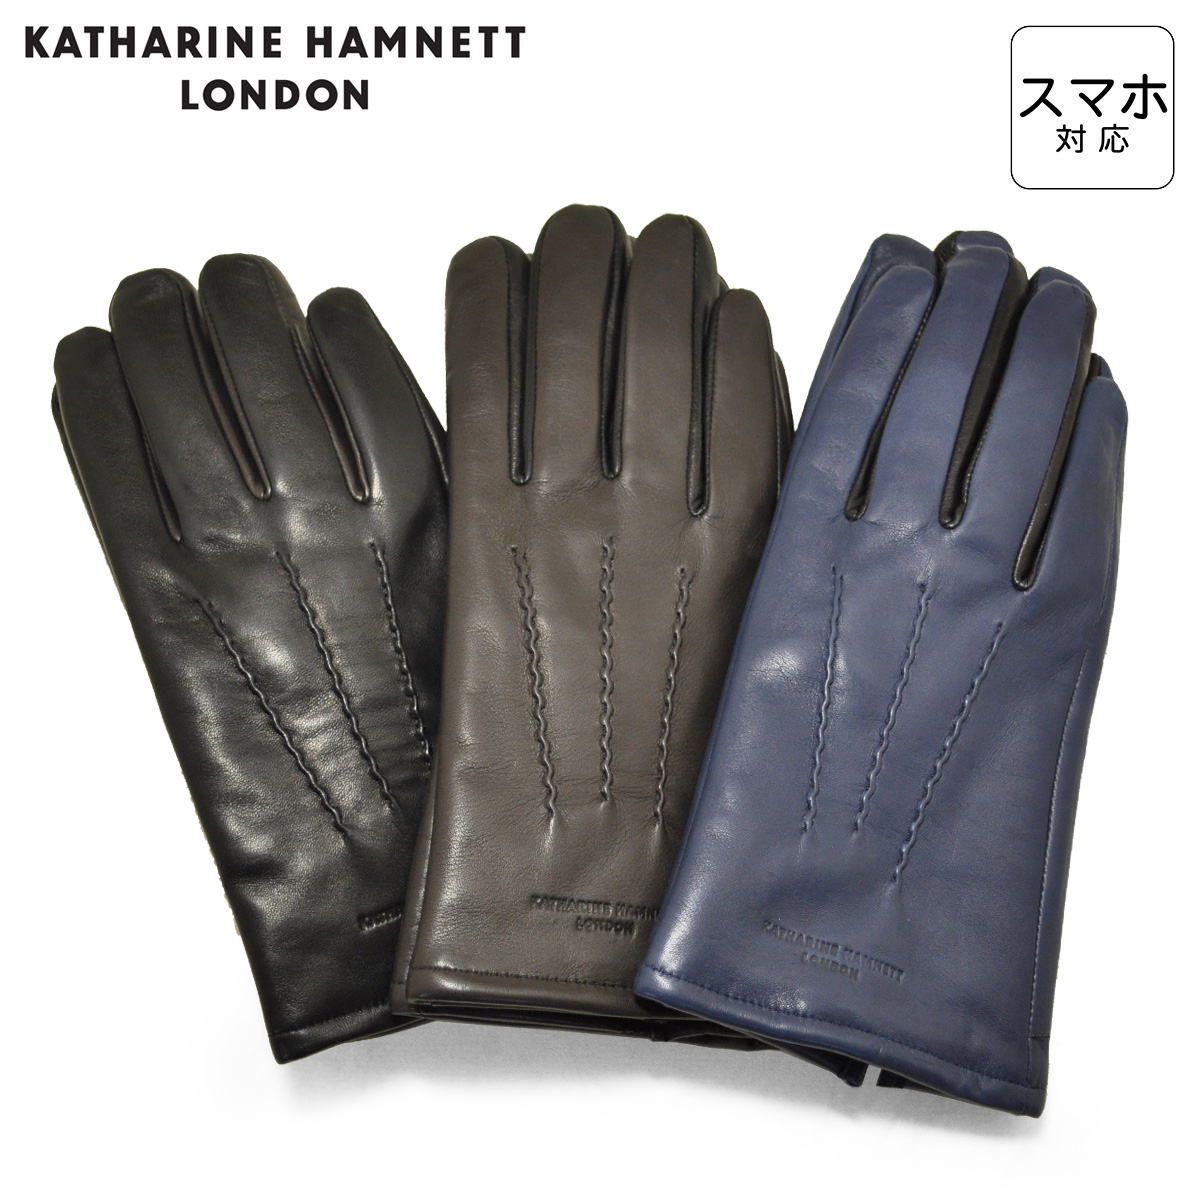 キャサリンハムネット 手袋 本革 メンズ グローブ KHM-101